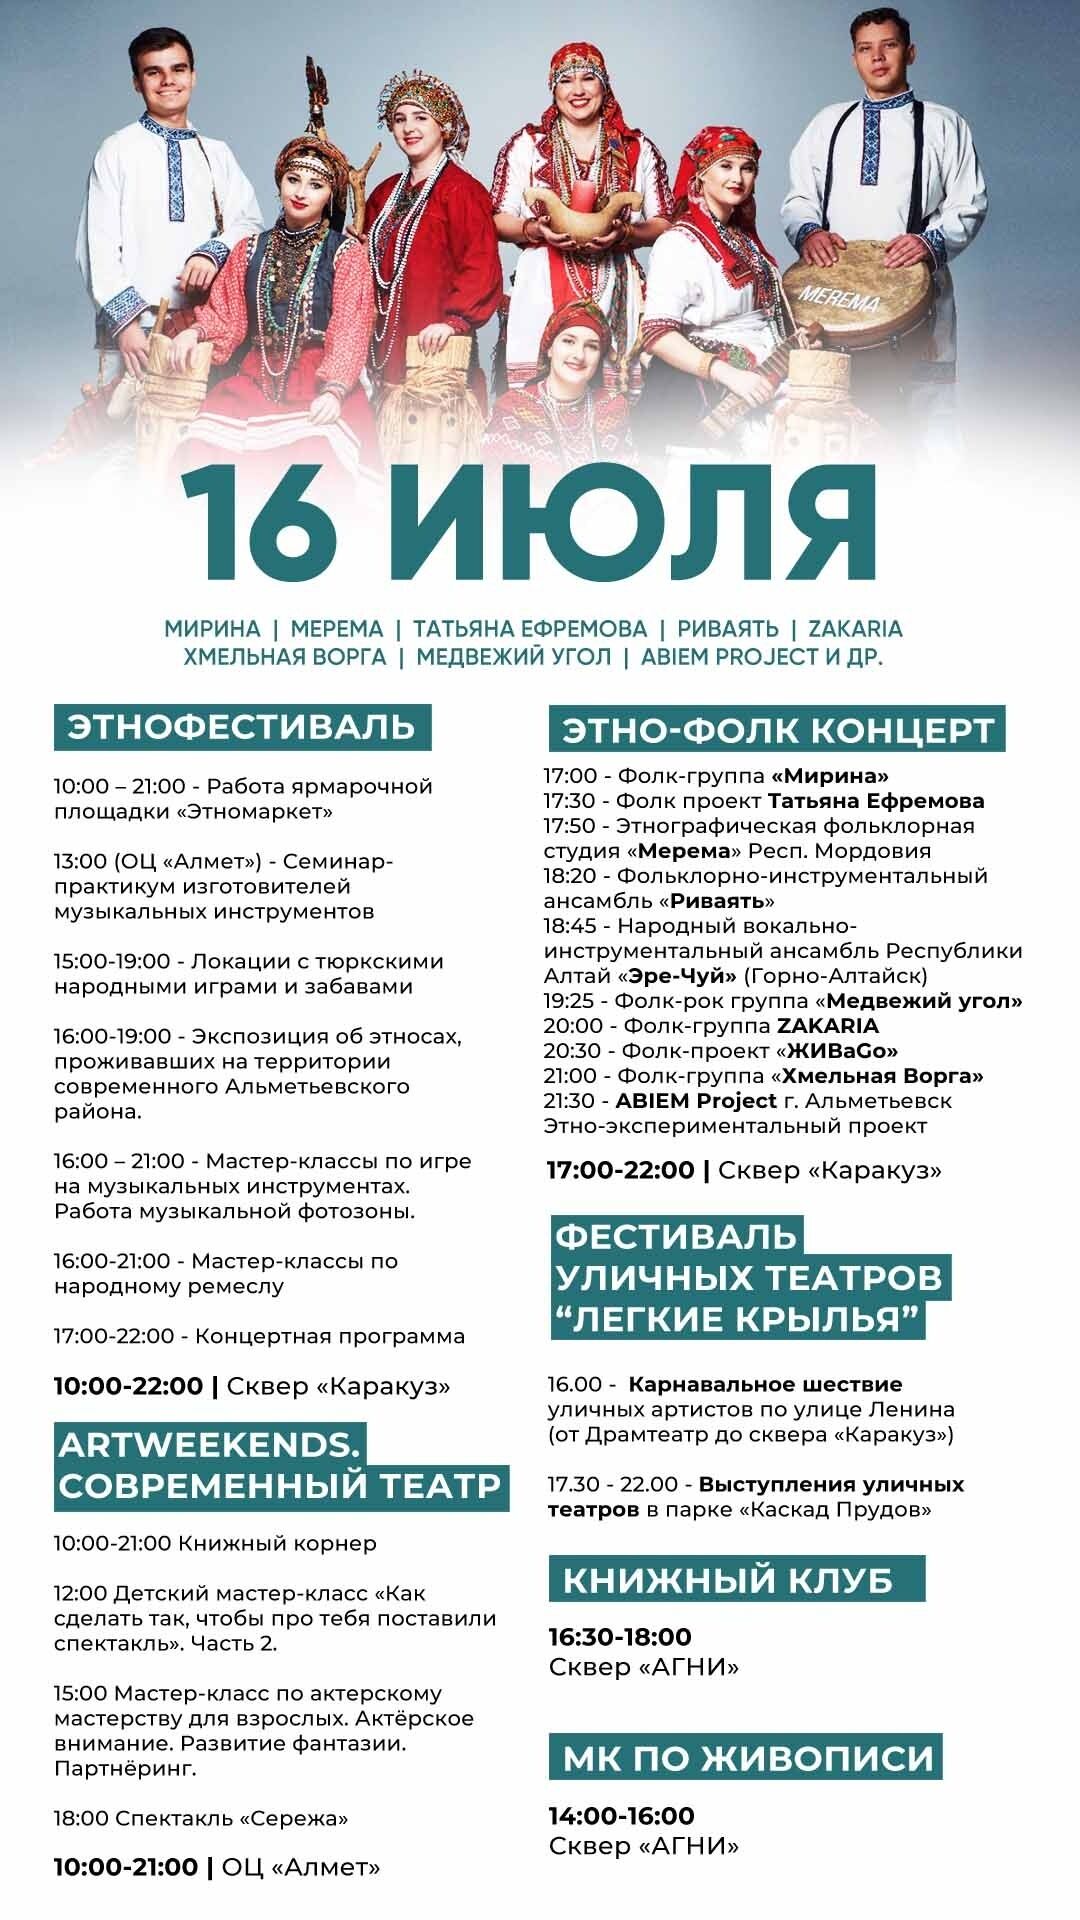 Куда пойти в Альметьевске: афиша фестиваля «Лето. KARAKUZ» на 16 июля